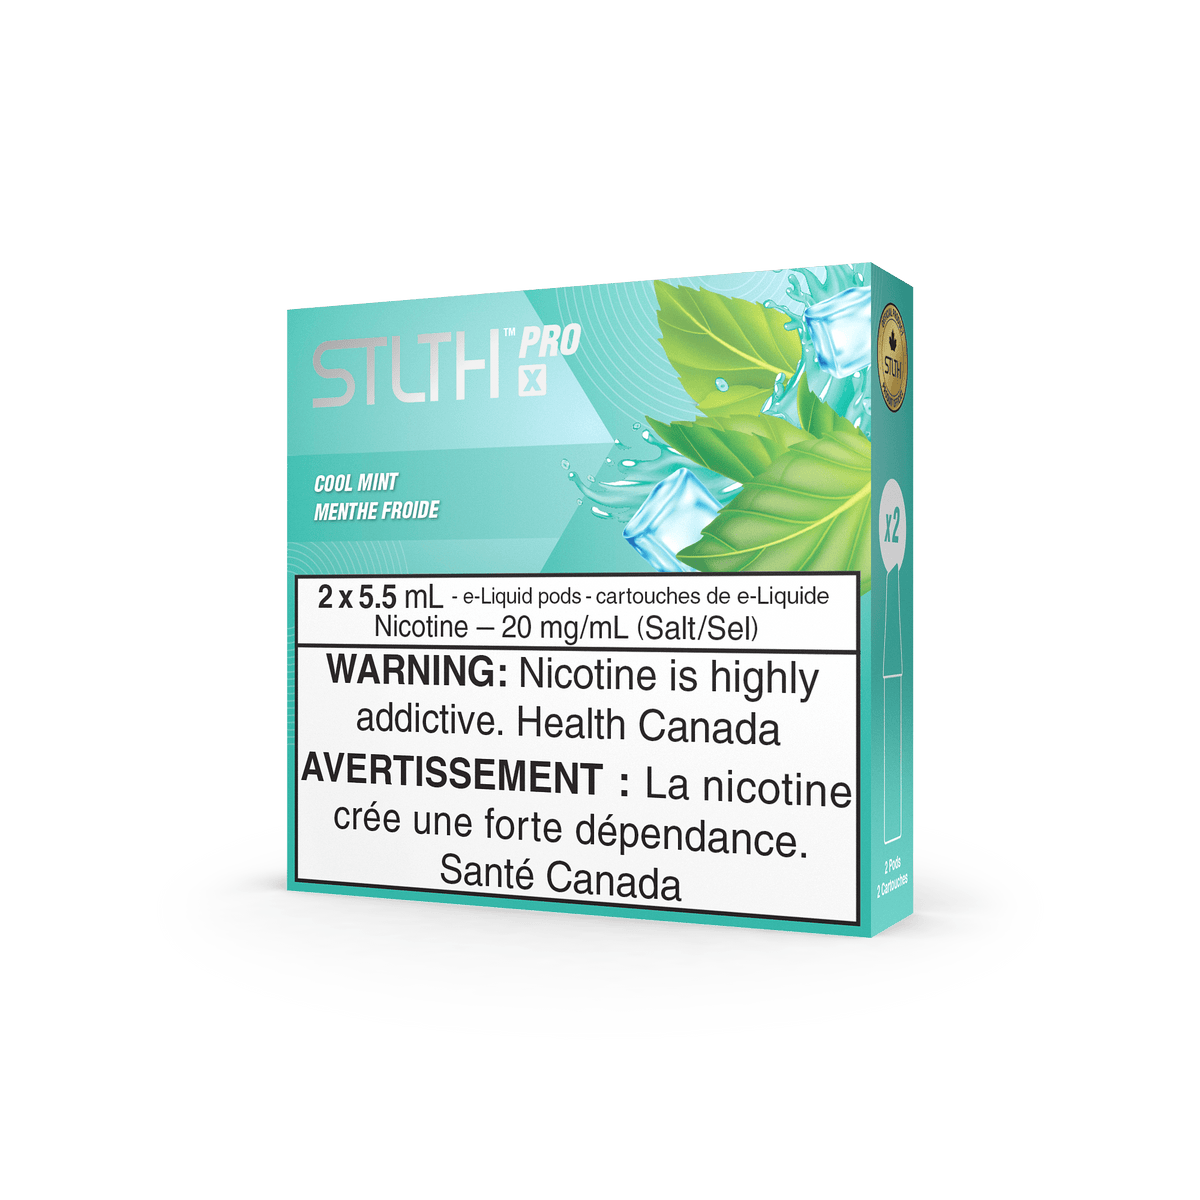 STLTH Pro X - Cool Mint Vape Pod available on Canada online vape shop